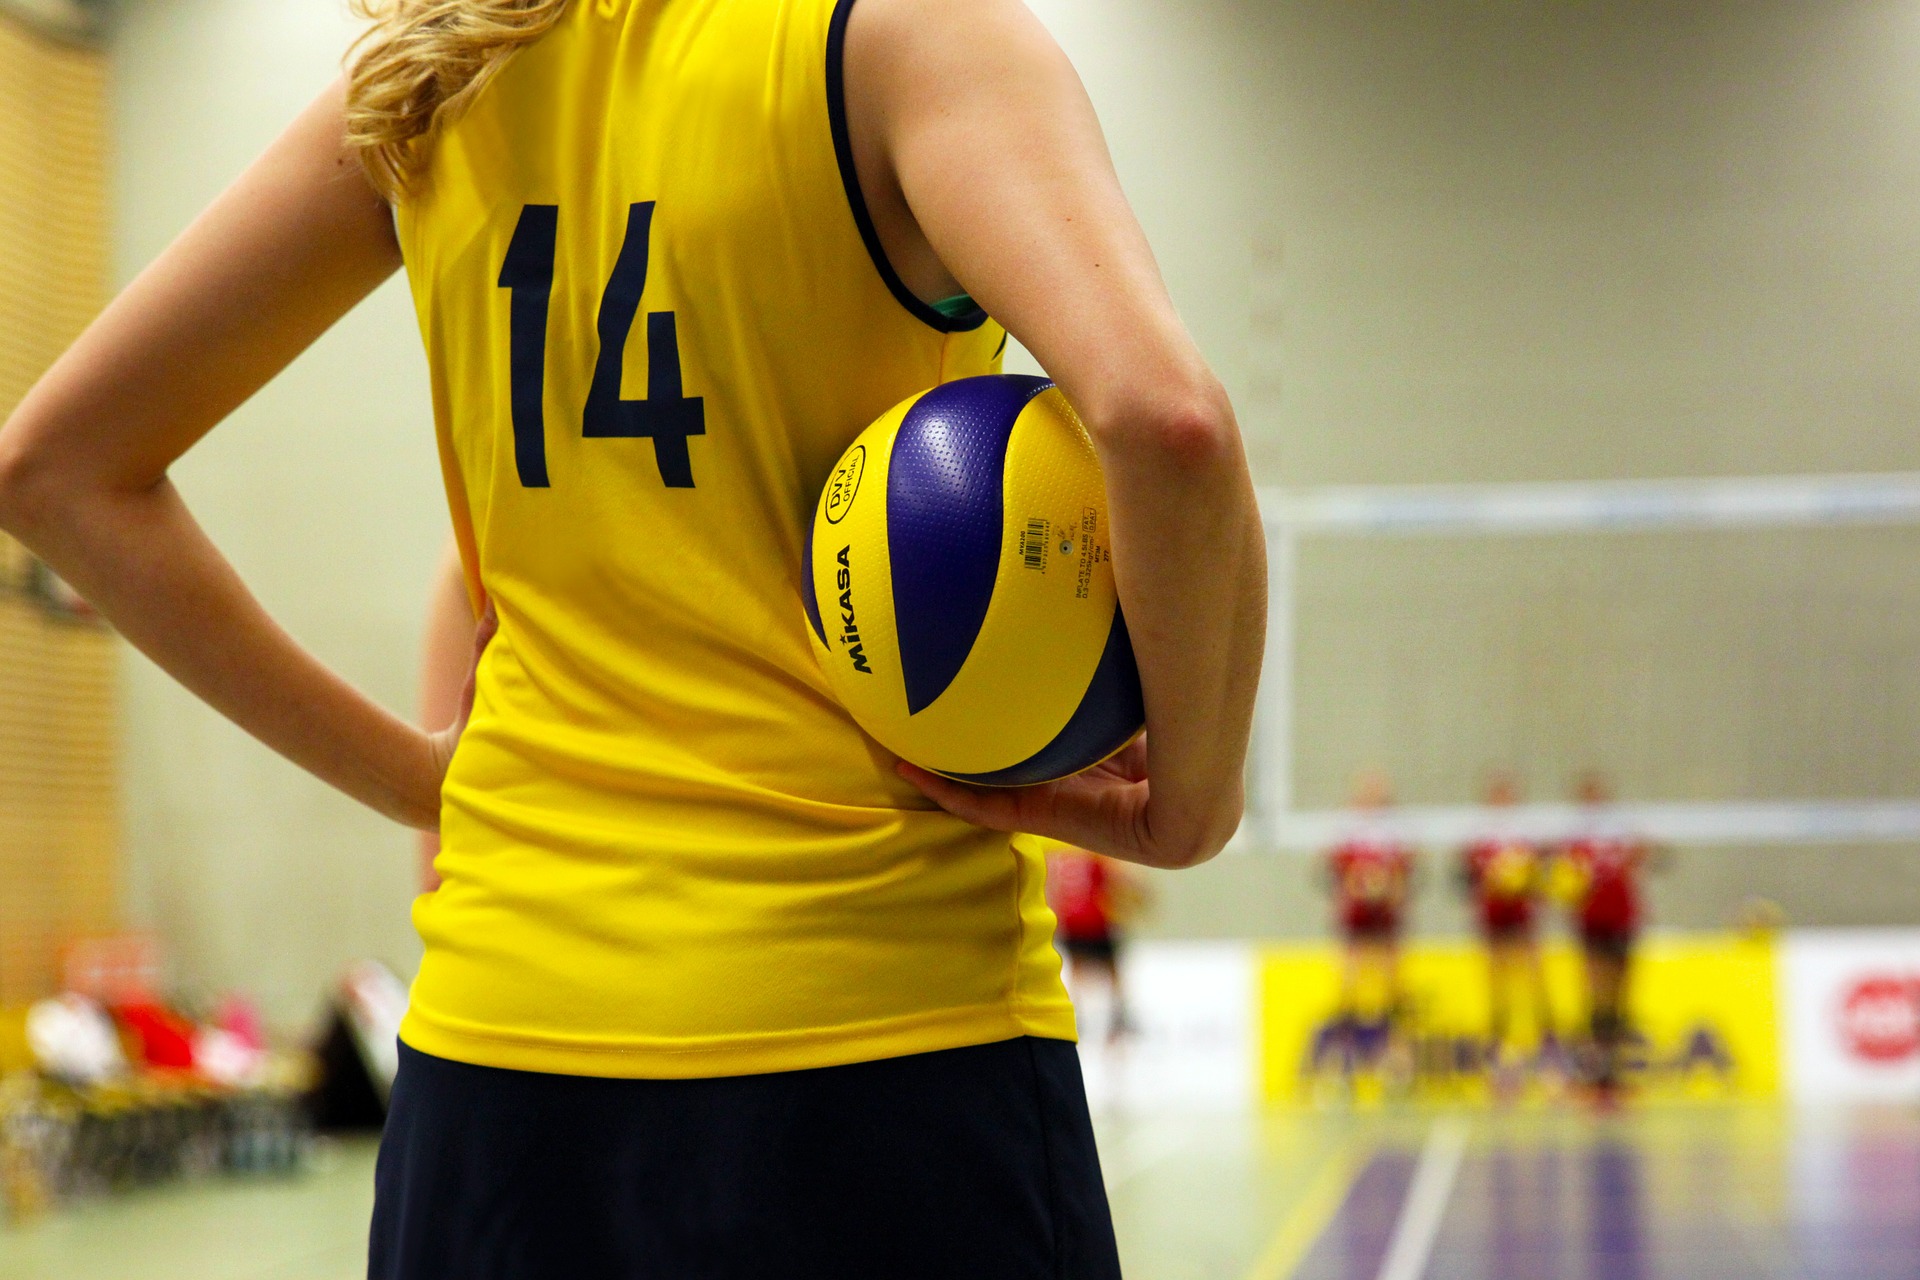 Волейбольная команда Плехановского университета объявила дату отбора спортсменов в сборную. Фото: pixabay.com